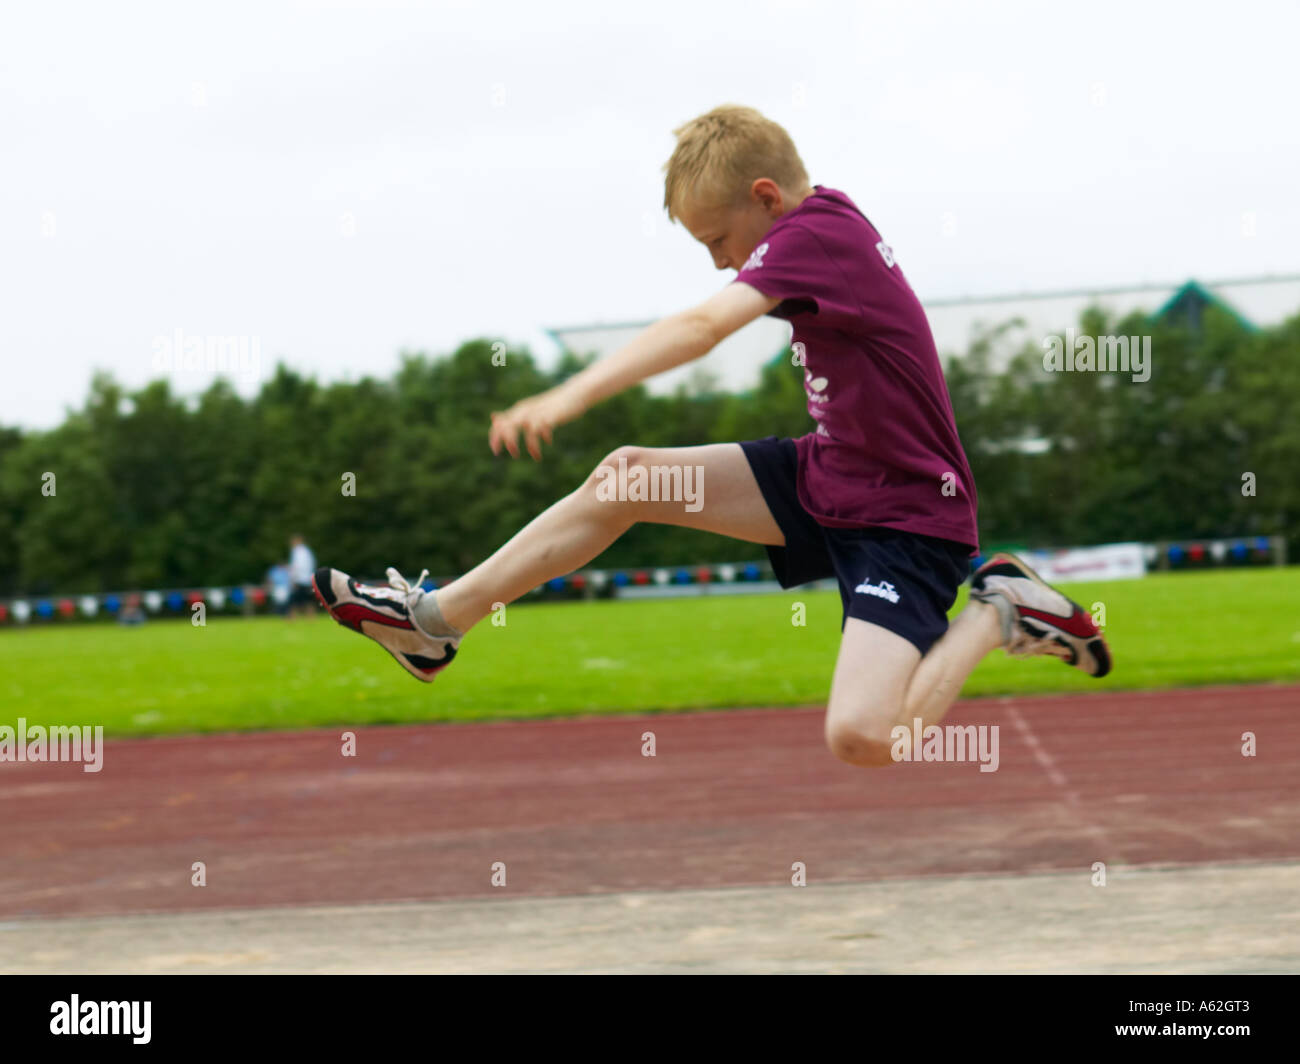 Junge auf einem Sporttag im Weitsprung Veranstaltung konkurrieren Stockfoto